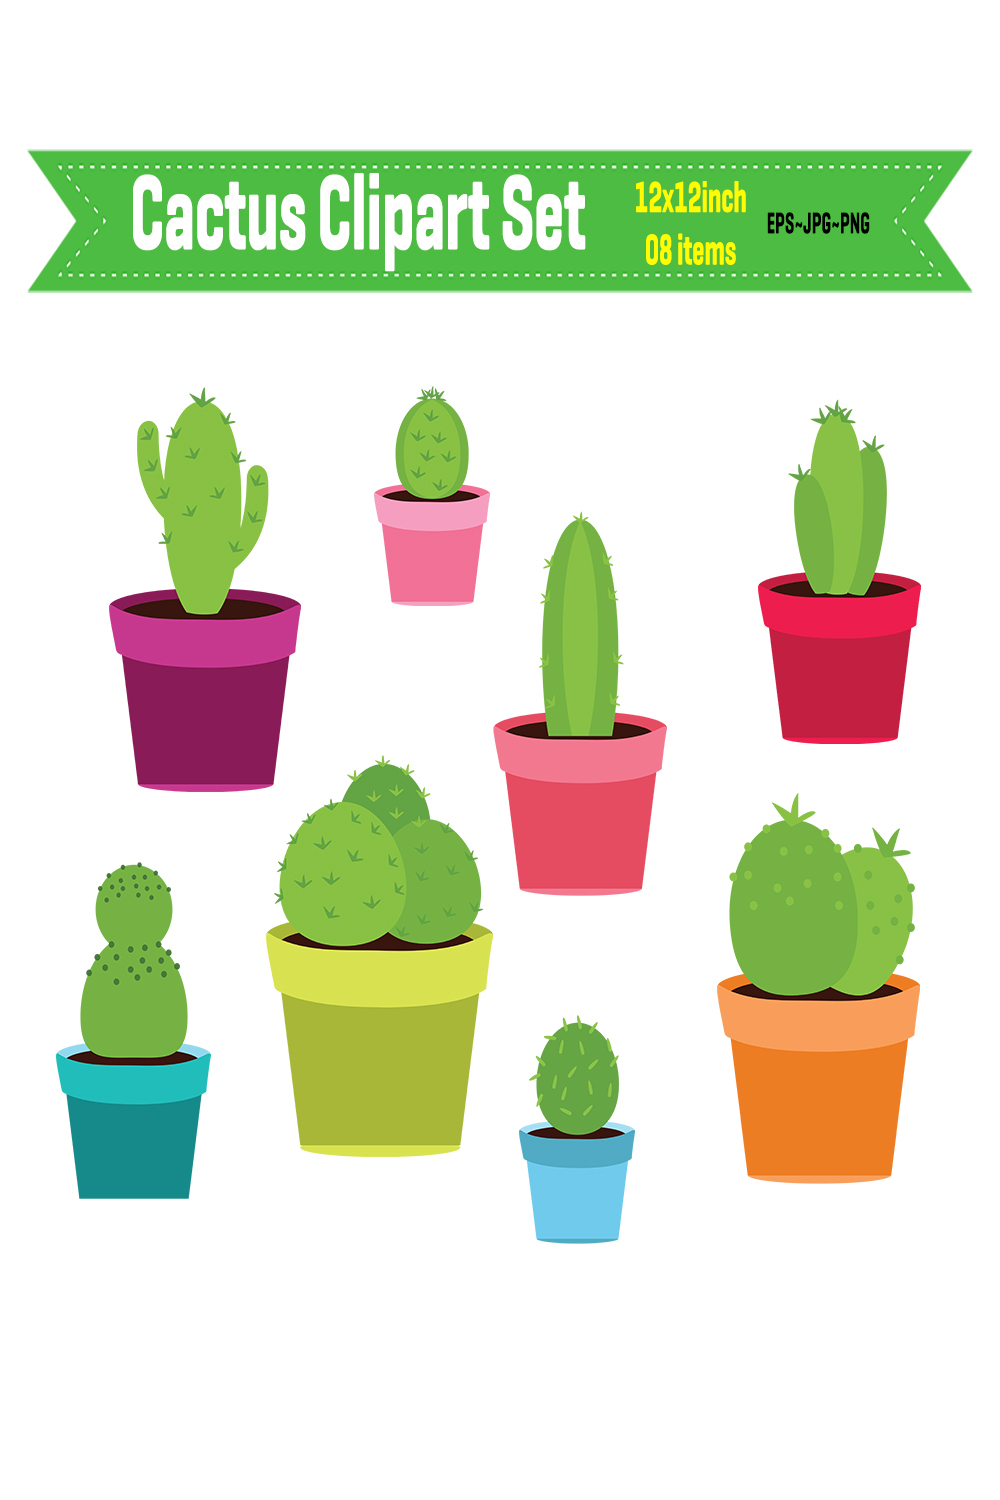 Cactus Clipart pinterest preview image.